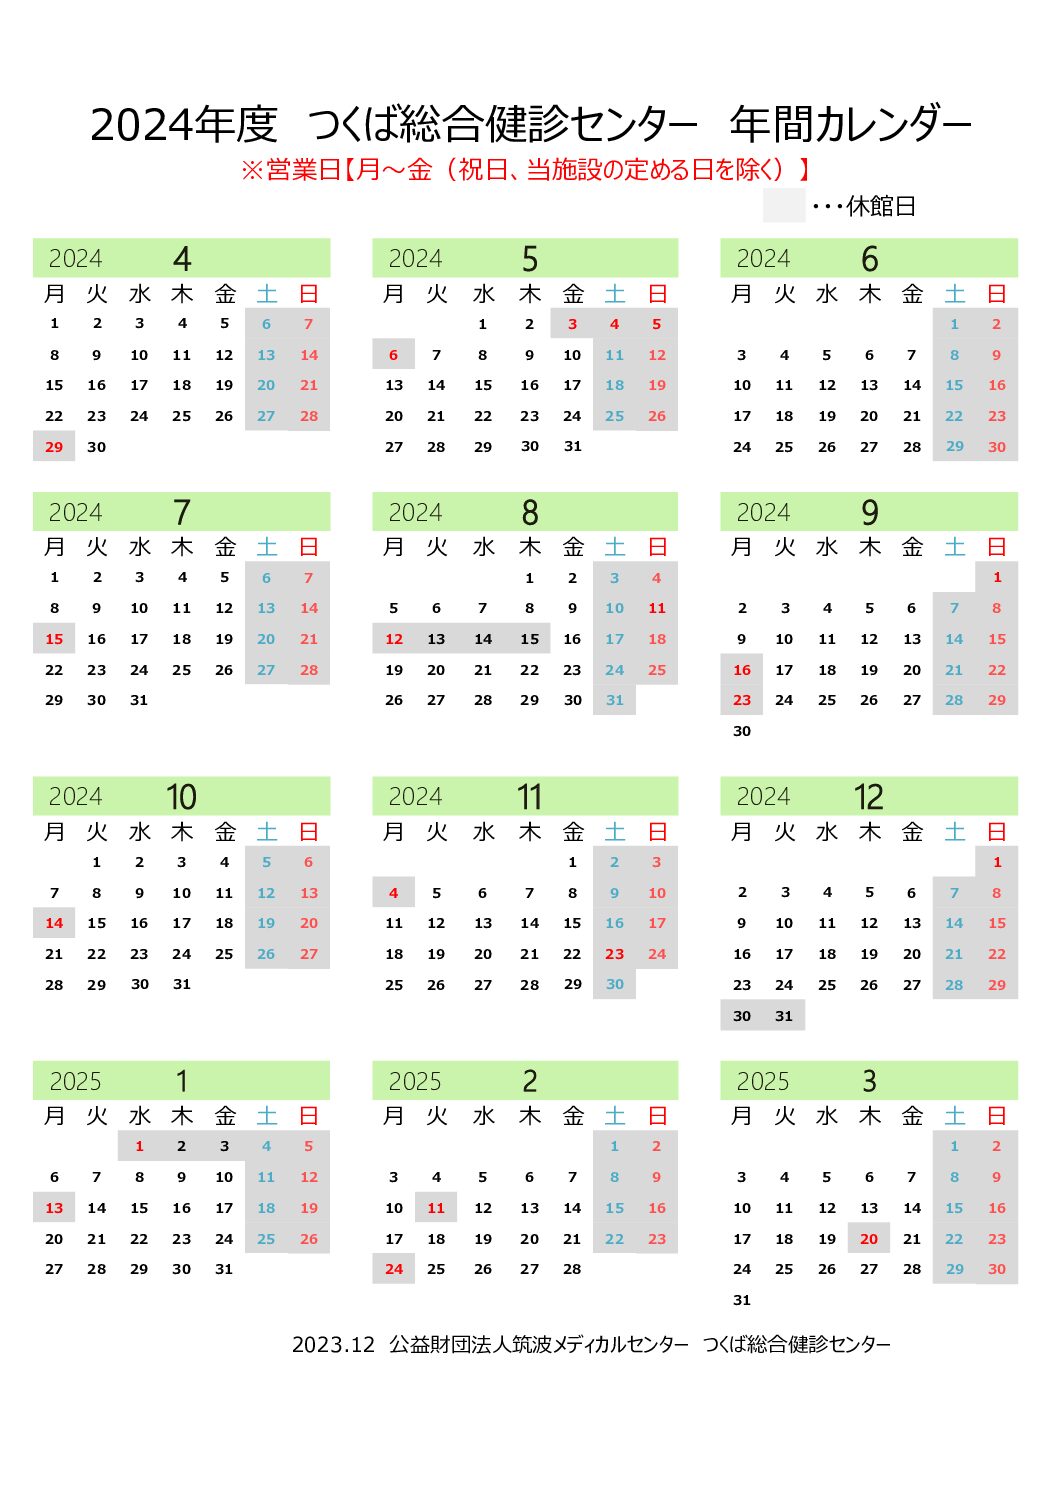 Imagen del Calendario Anual del Centro de Chequeo de Salud 2024